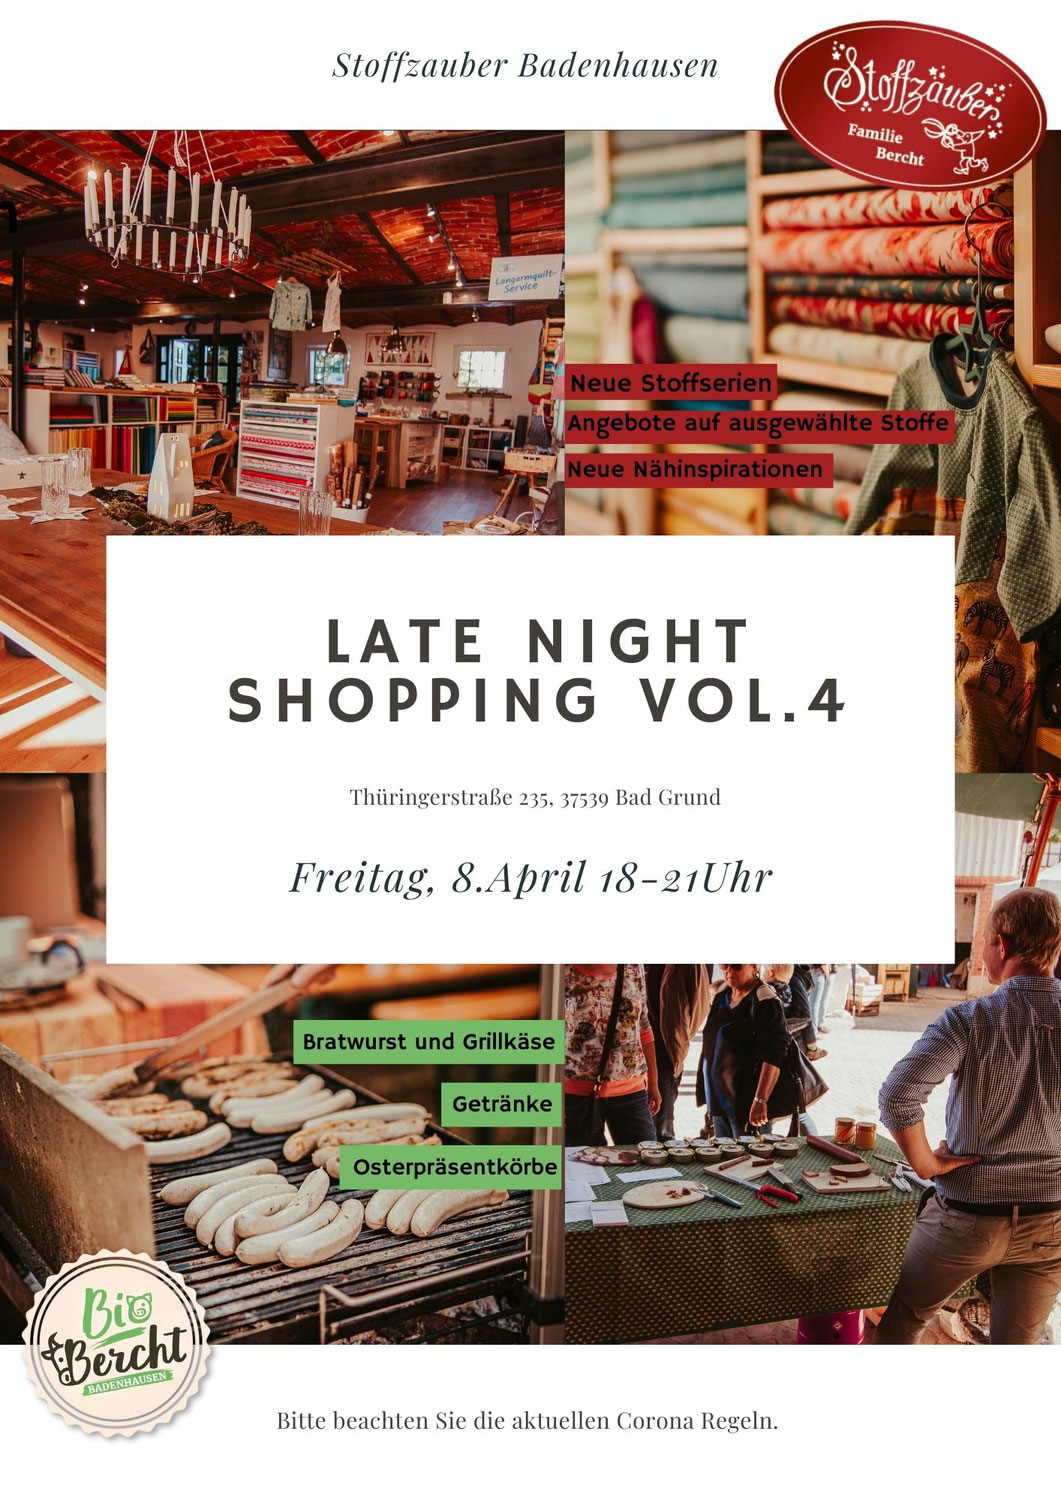 Herzliche Einladung - Late Night Shopping Vol. 4 im Stoffzauber 